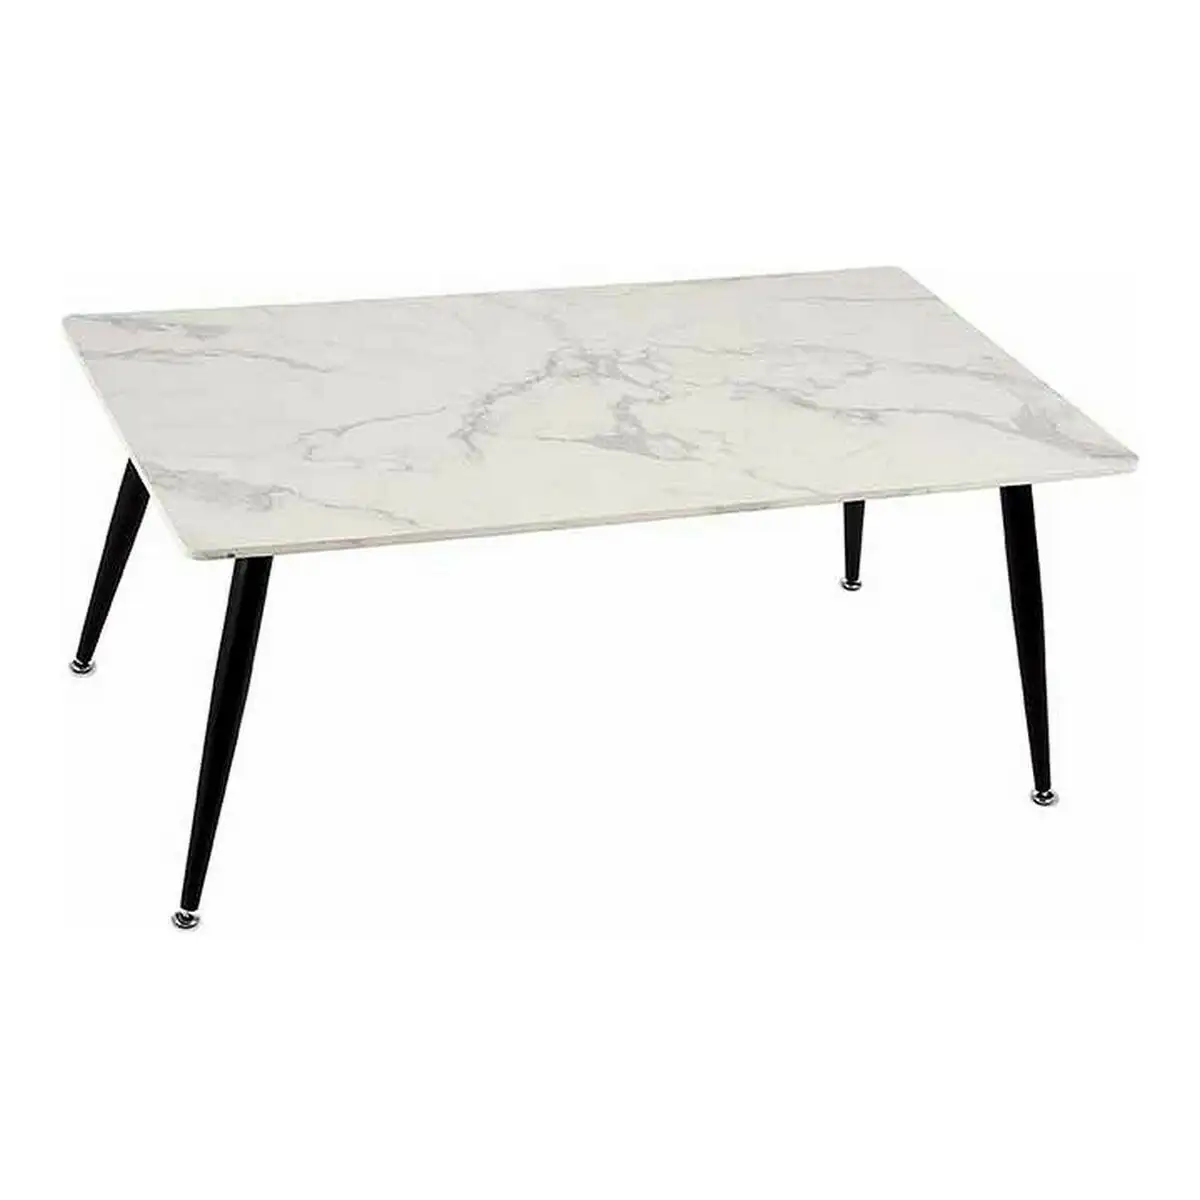 Table basse noir blanc marbre metal melamine bois mdf_4961. DIAYTAR SENEGAL - Là où Chaque Achat a du Sens. Explorez notre gamme et choisissez des produits qui racontent une histoire, du traditionnel au contemporain.